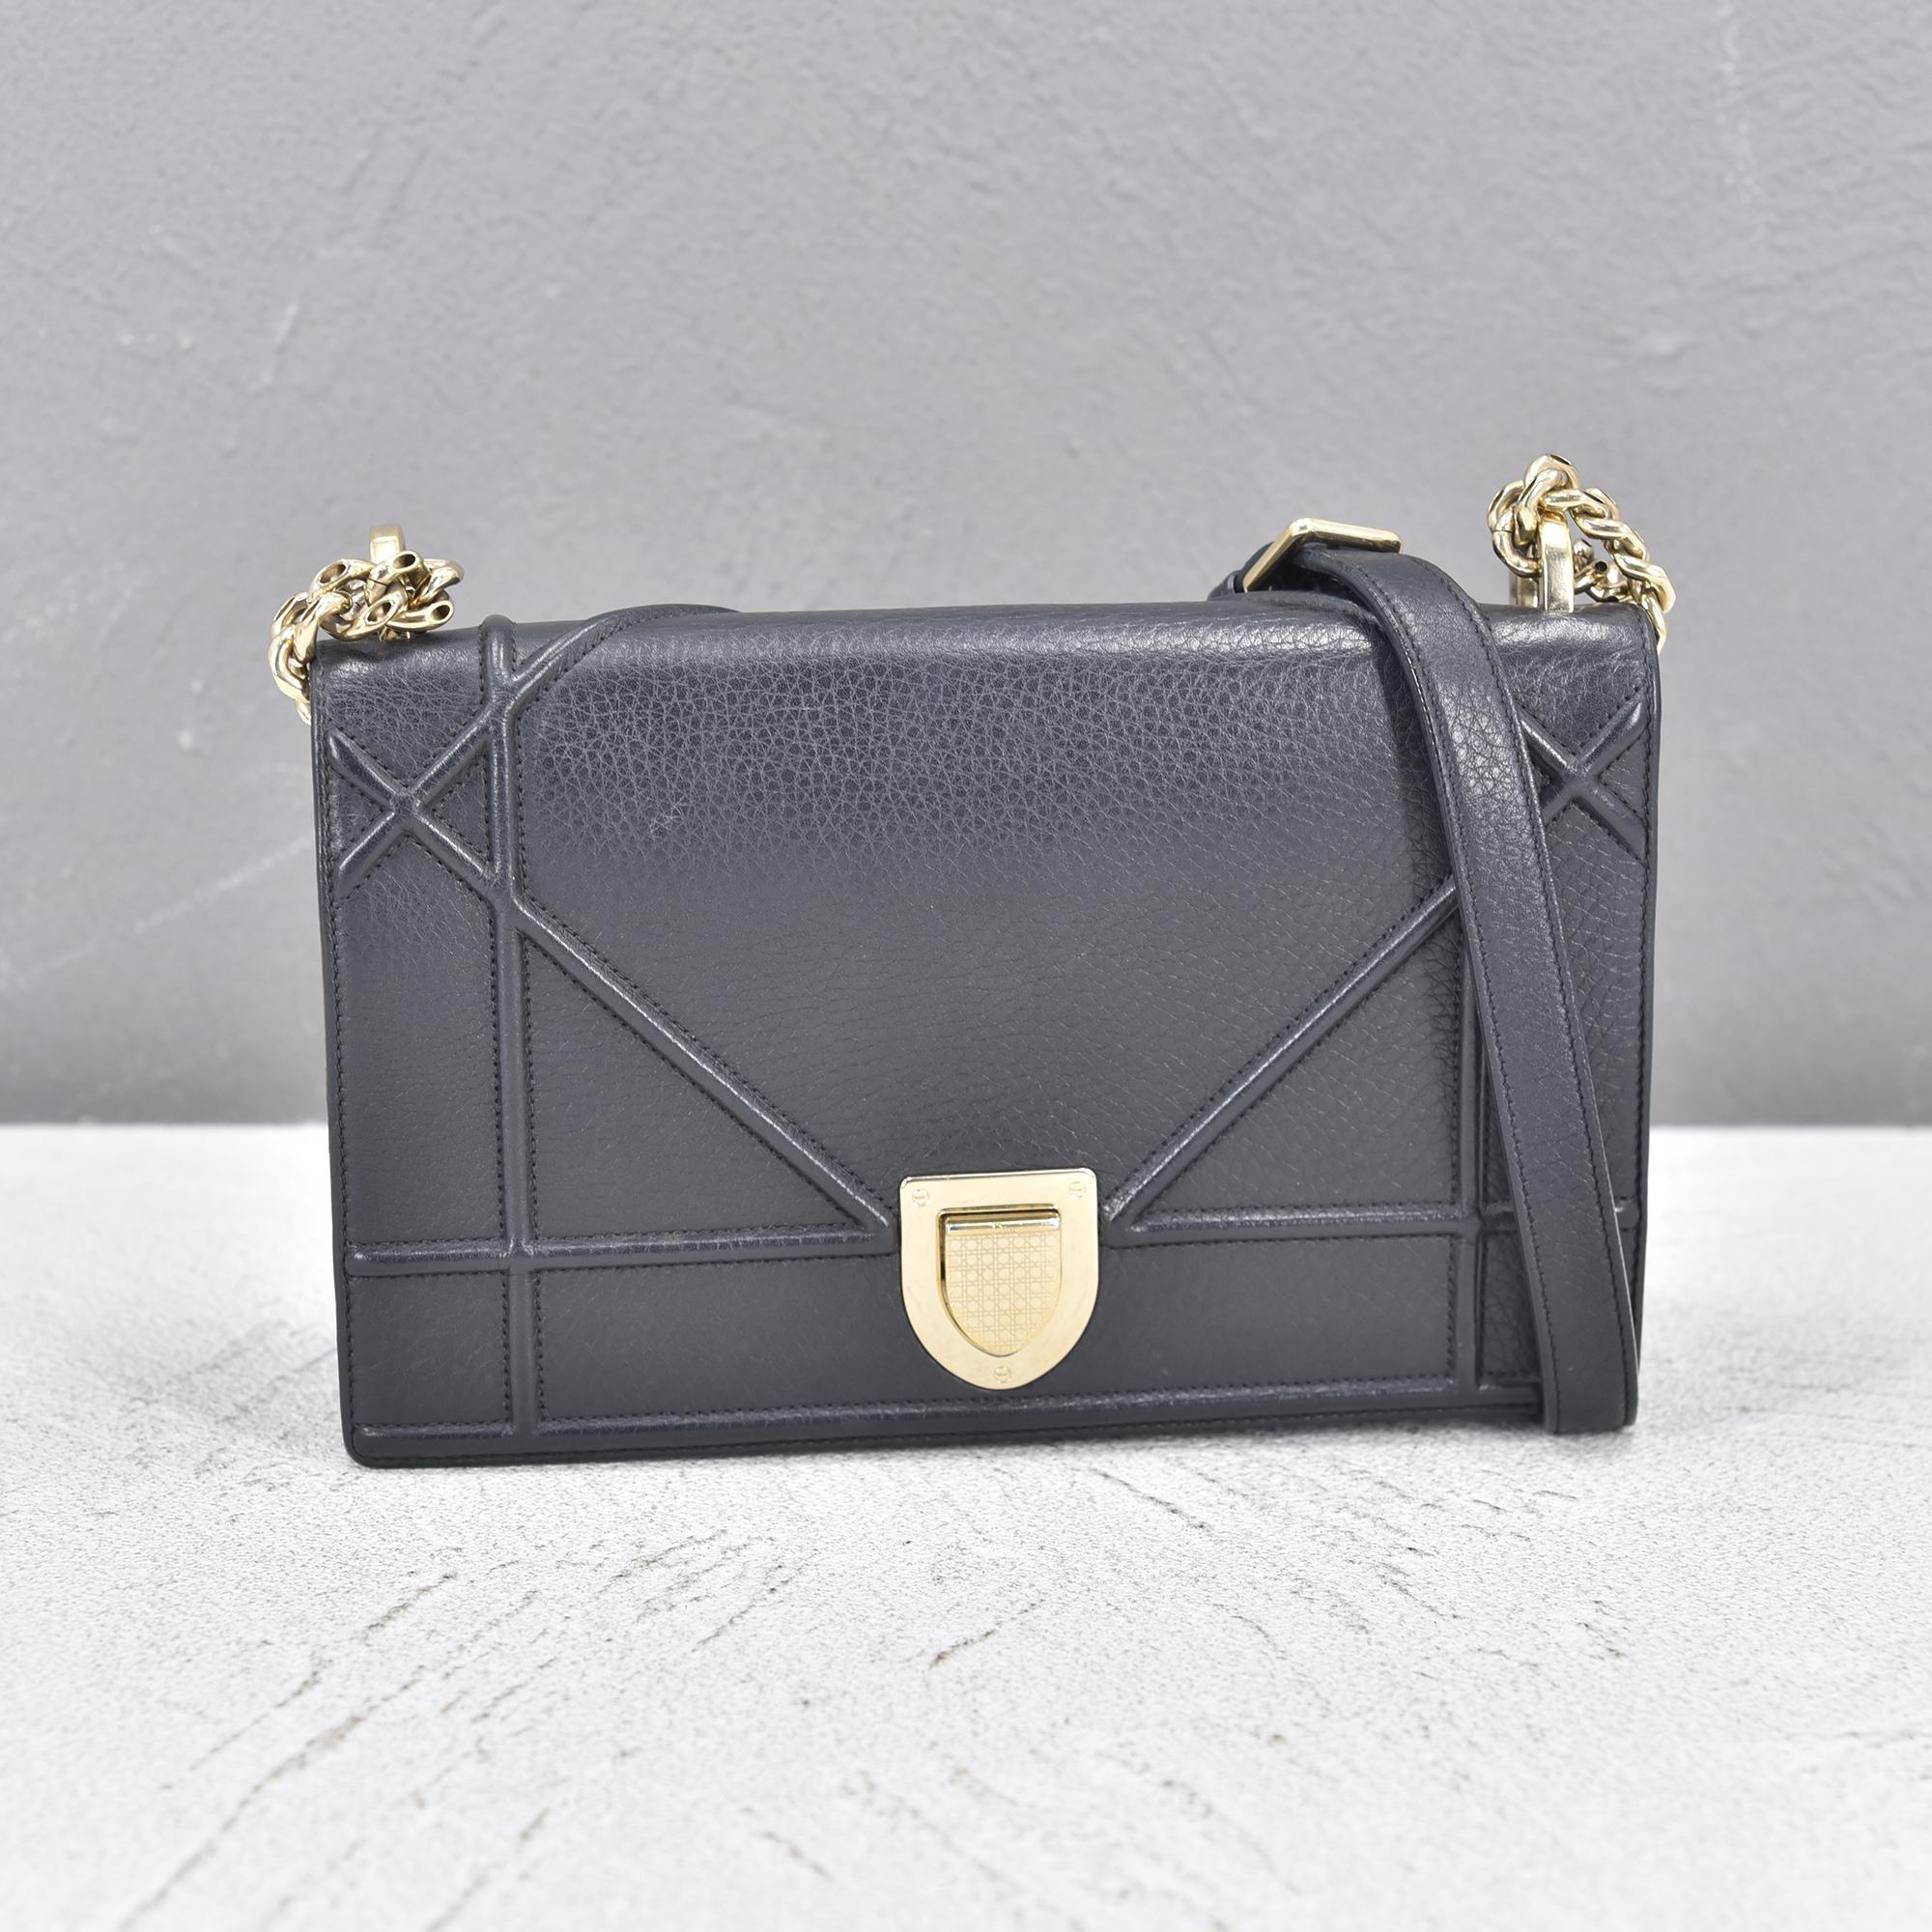 Medium Diorama Leather Bag